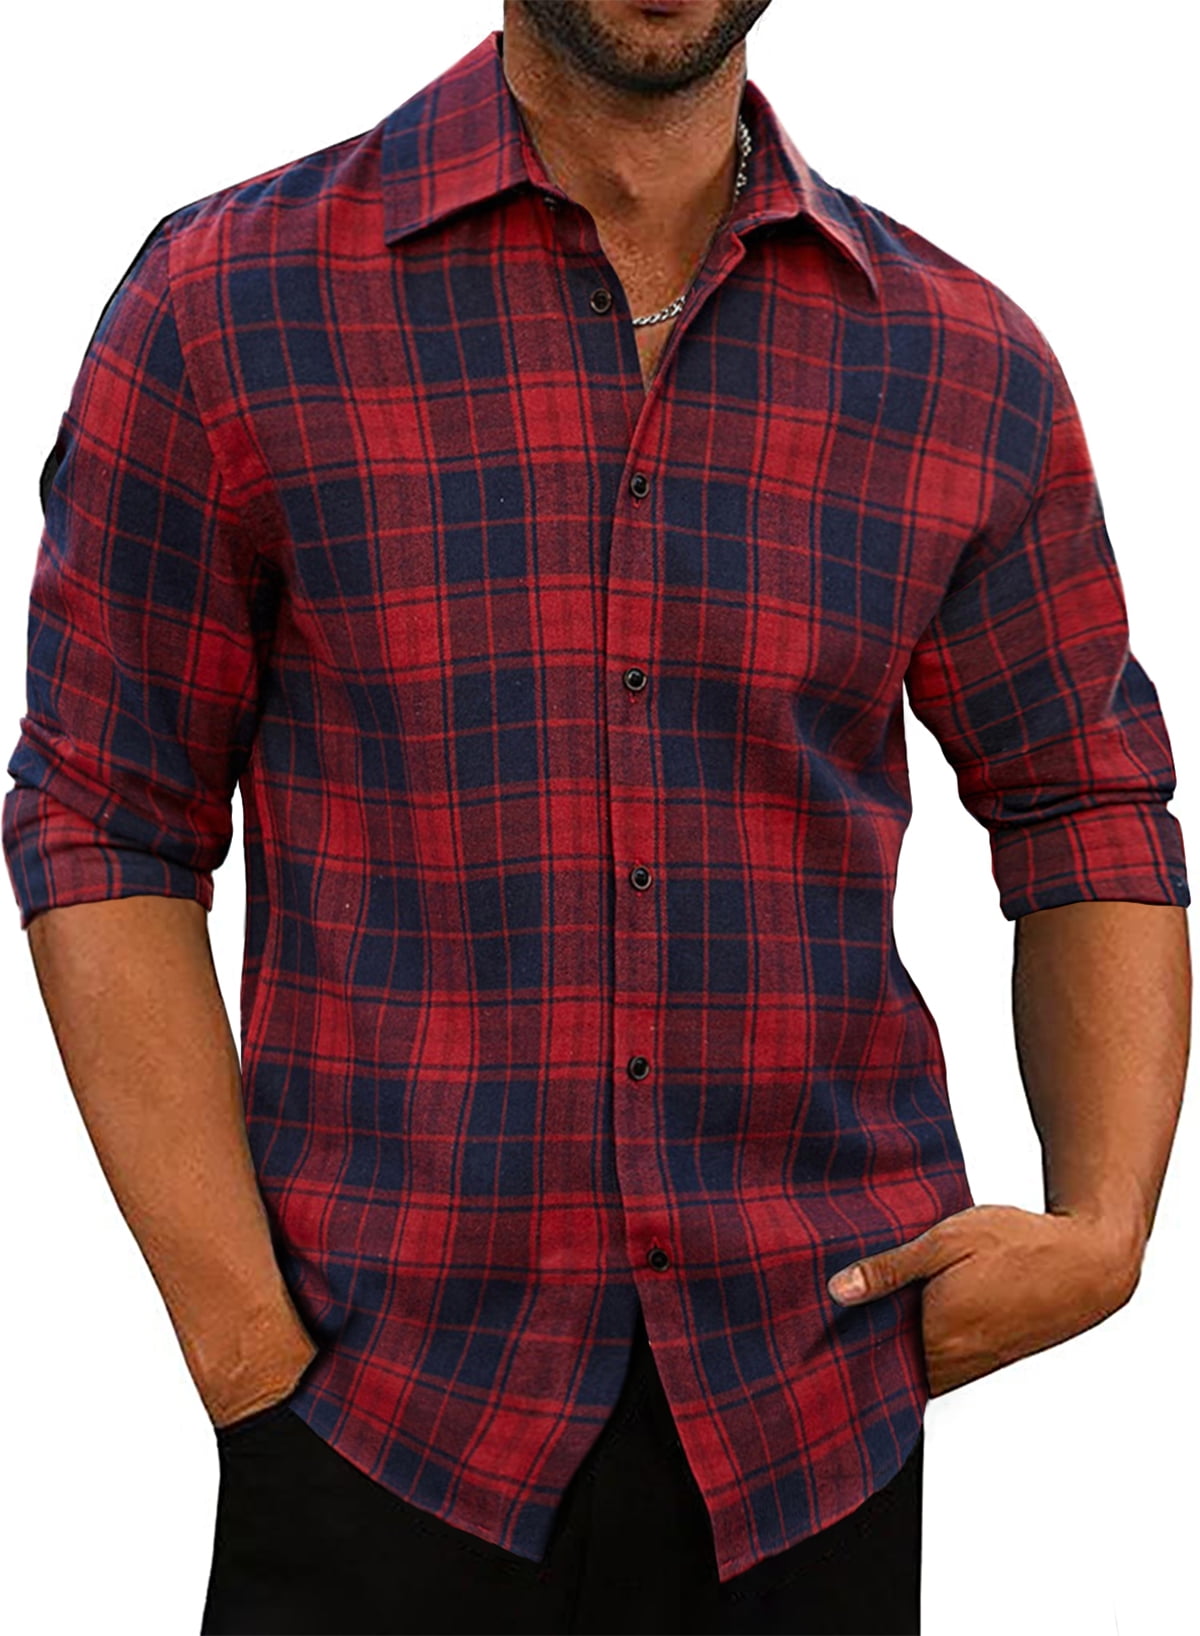 JMIERR Men Long Sleeve Button-Down Plaid Shirts Casual Cotton Flannel ...